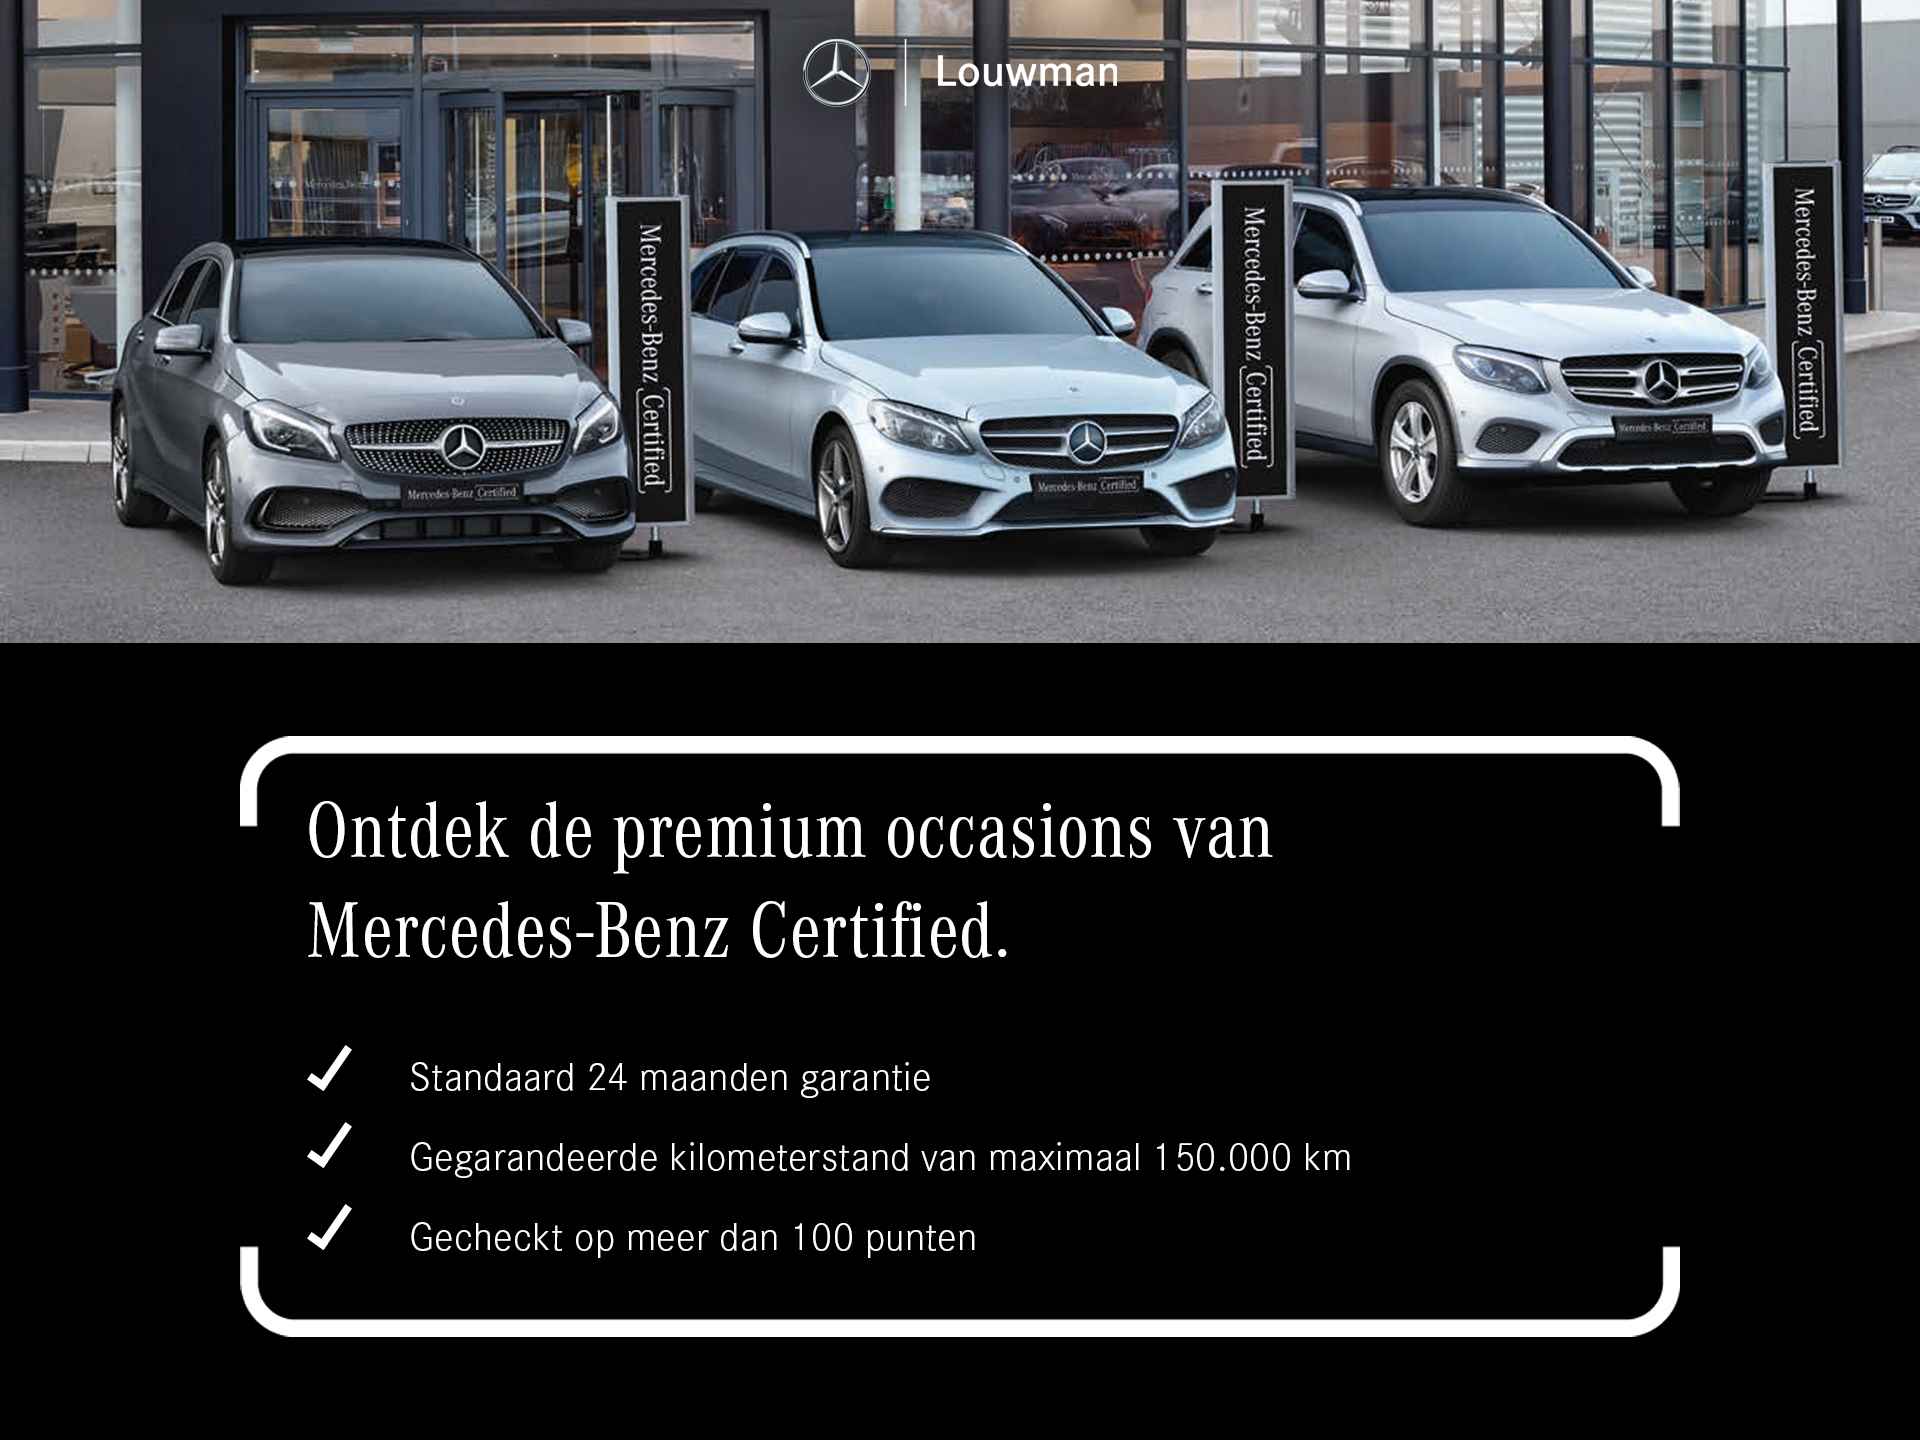 Mercedes-Benz B-Klasse 250 e AMG Line Limited Multispaaks lichtmetalen velgen | MBUX wide screen | Navigatie | Parking support | Inclusief 24 maanden Mercedes-Benz Certified garantie voor Europa. | - 44/45